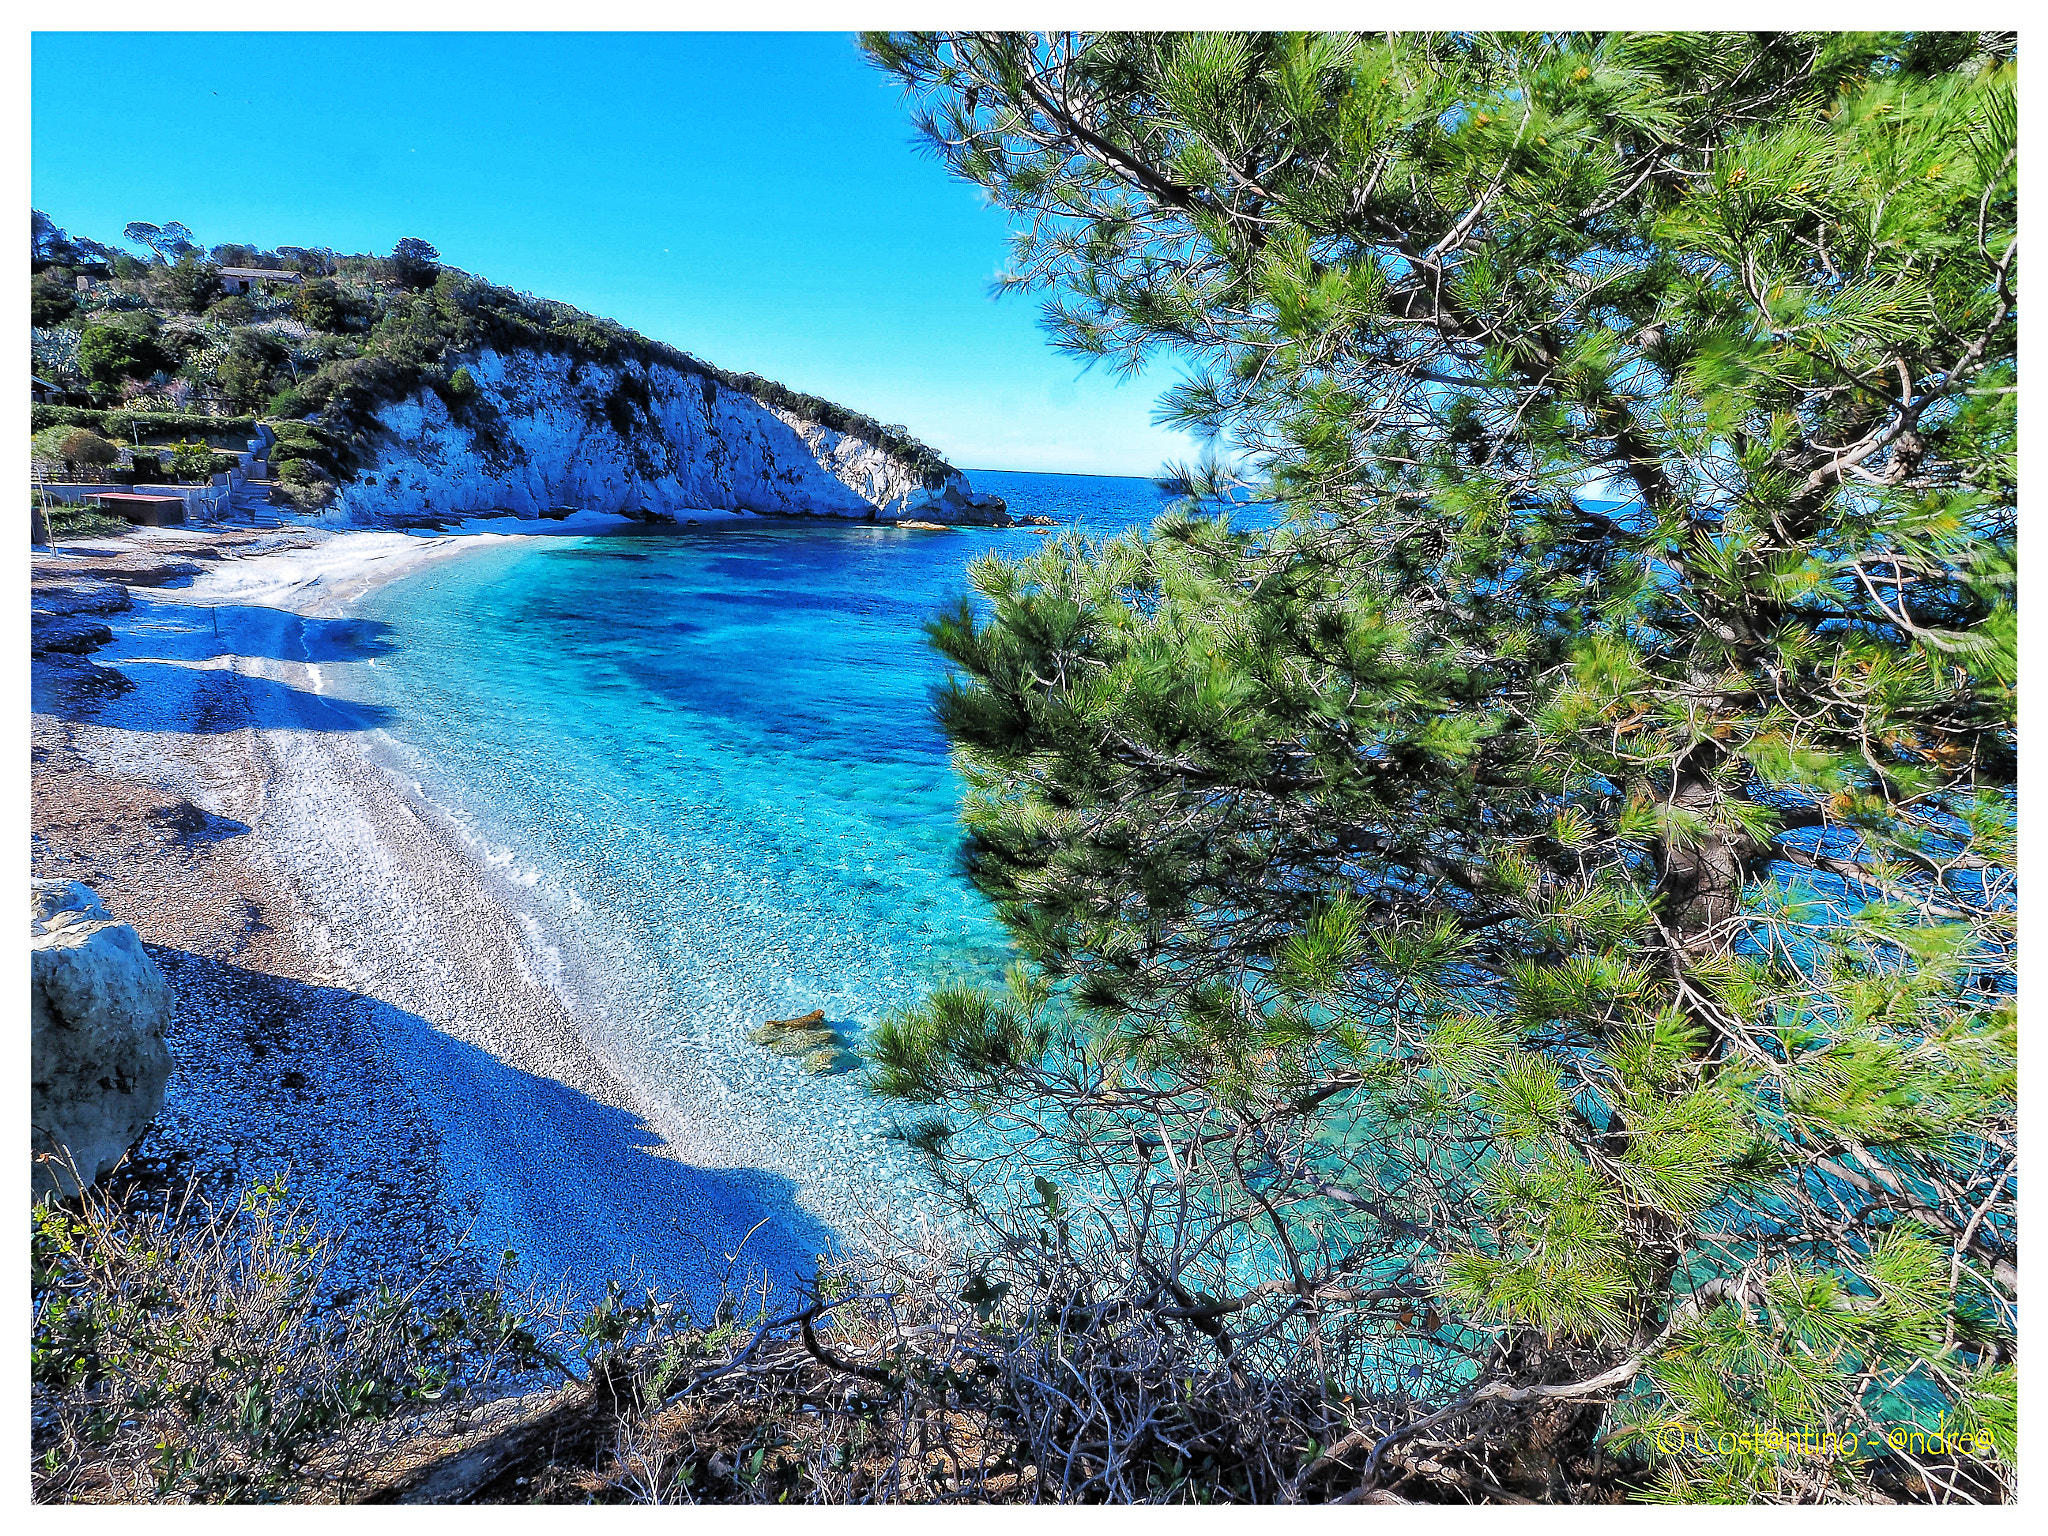 Olympus PEN-F sample photo. Un angolo caratteristico dell'isola d'elba: la spiaggia della padulella photography